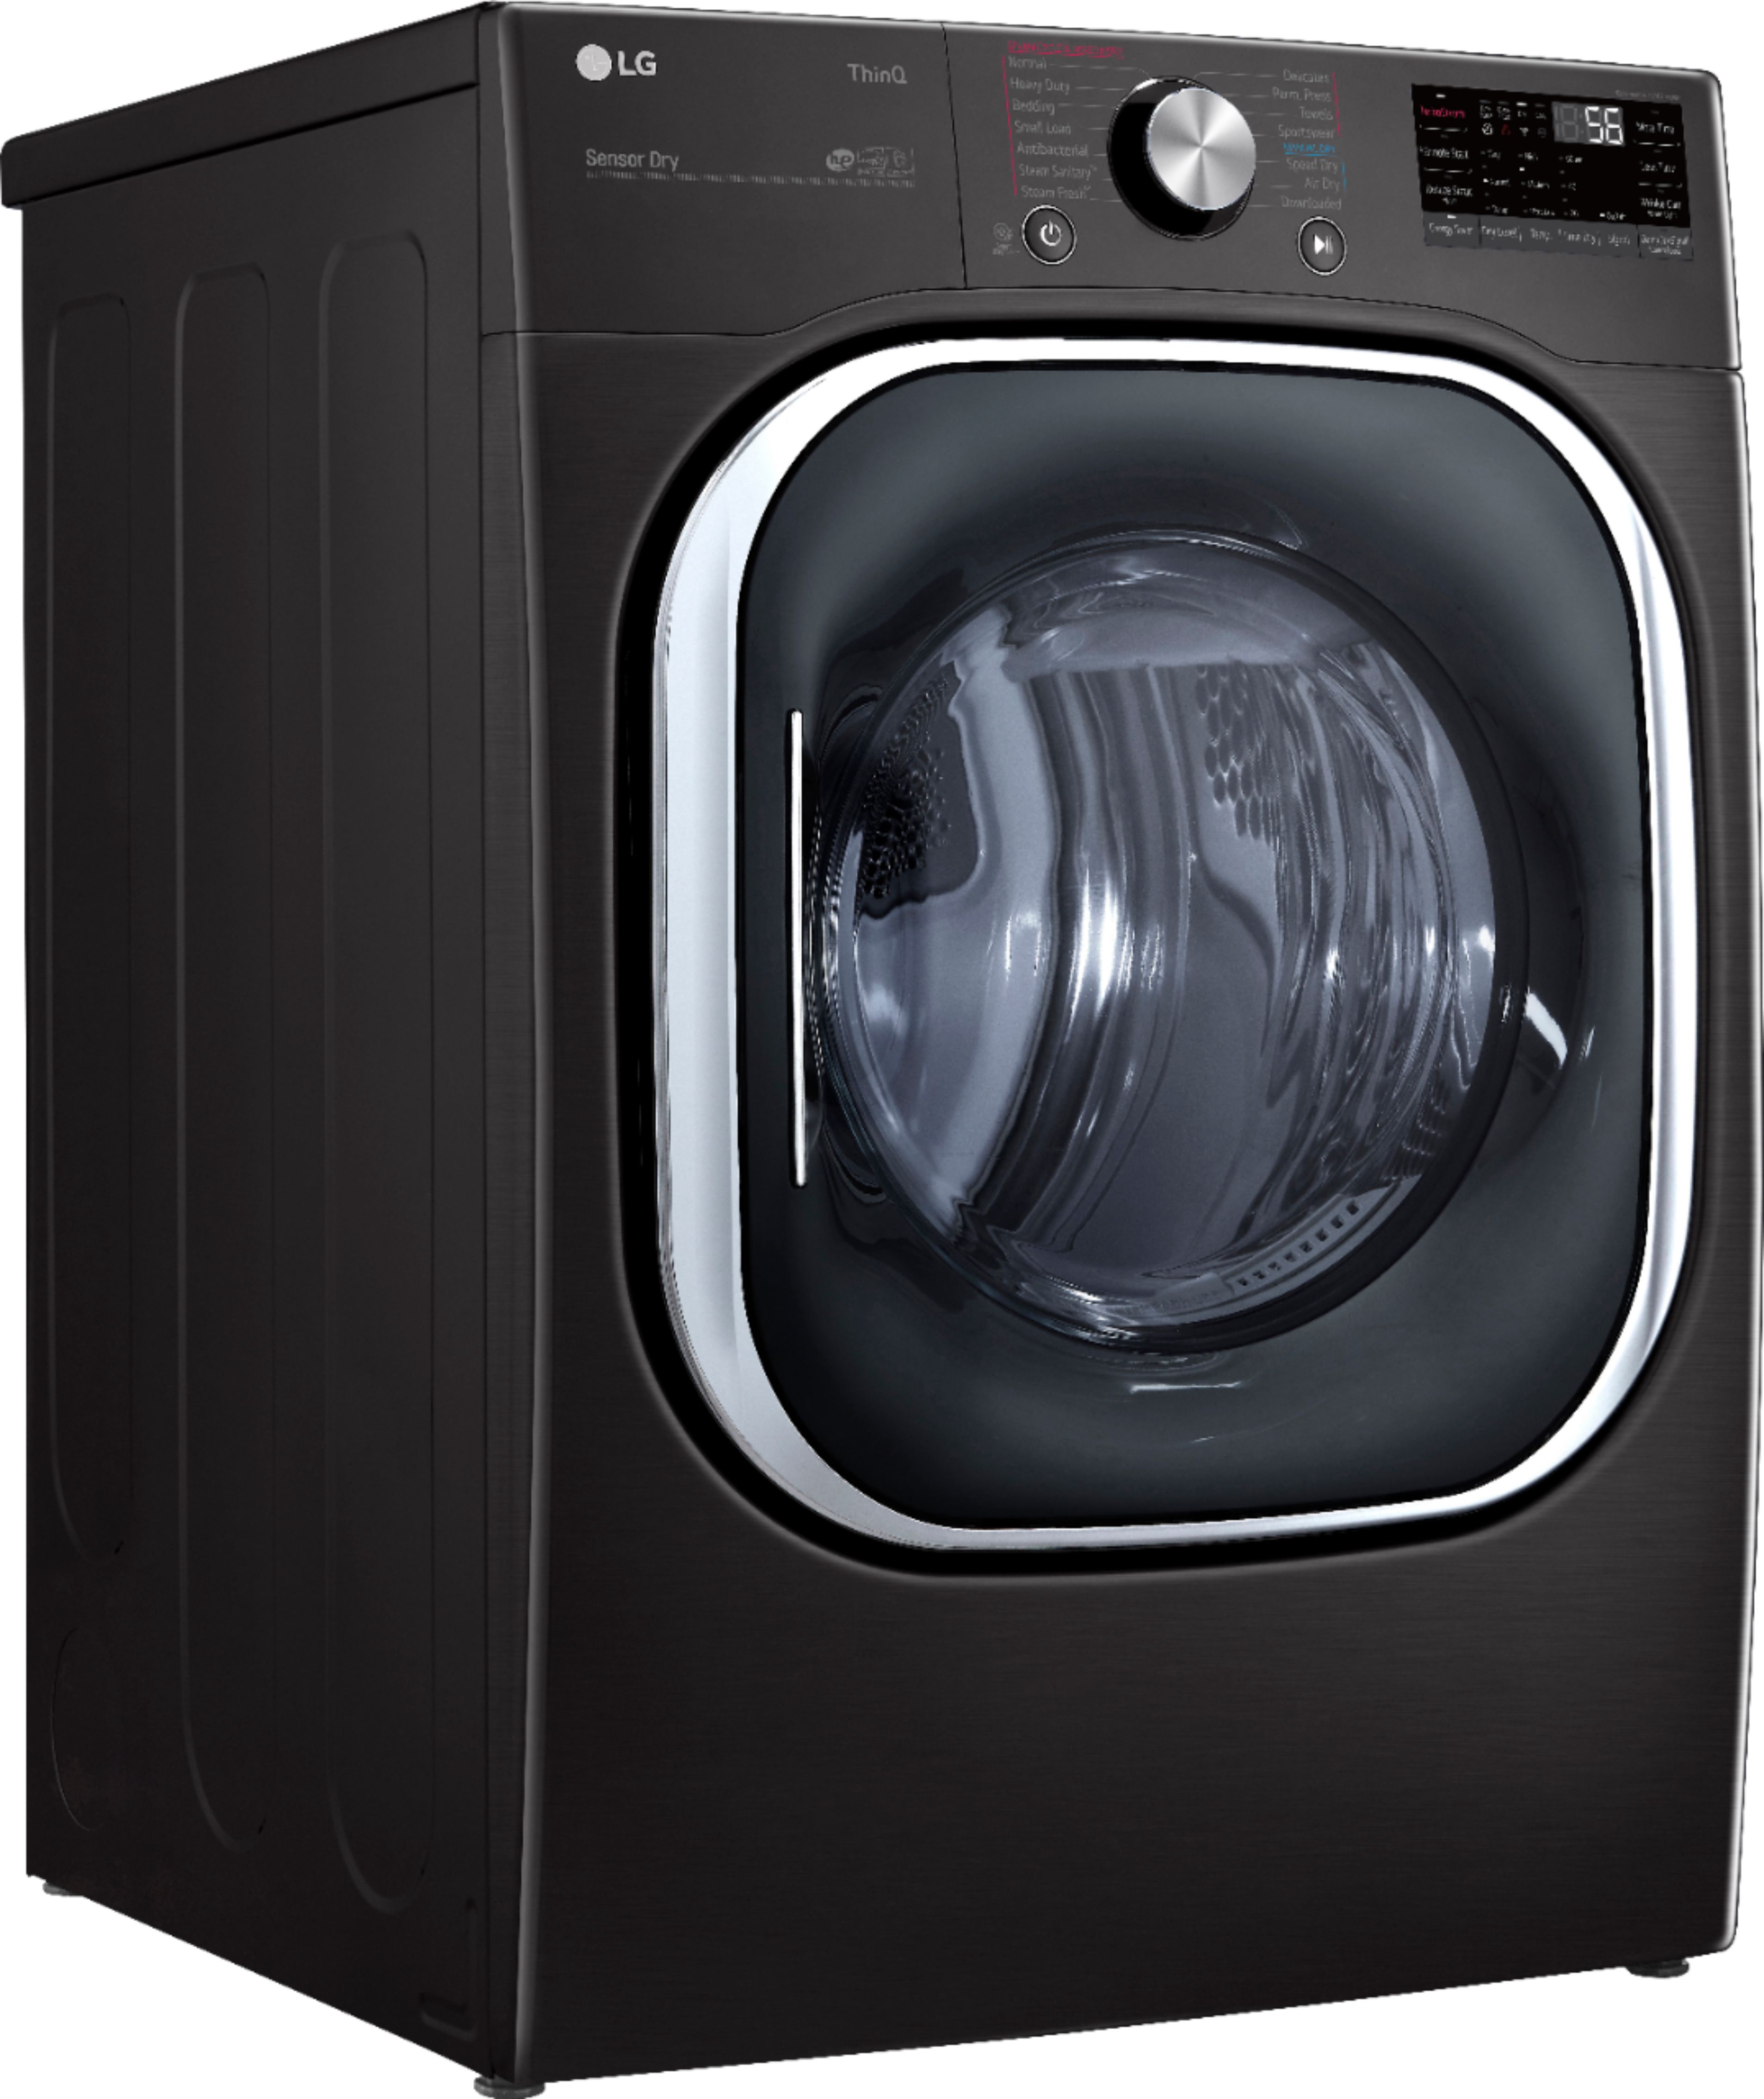 LG Dryer Inner GlassADC72301102ADC72301101 